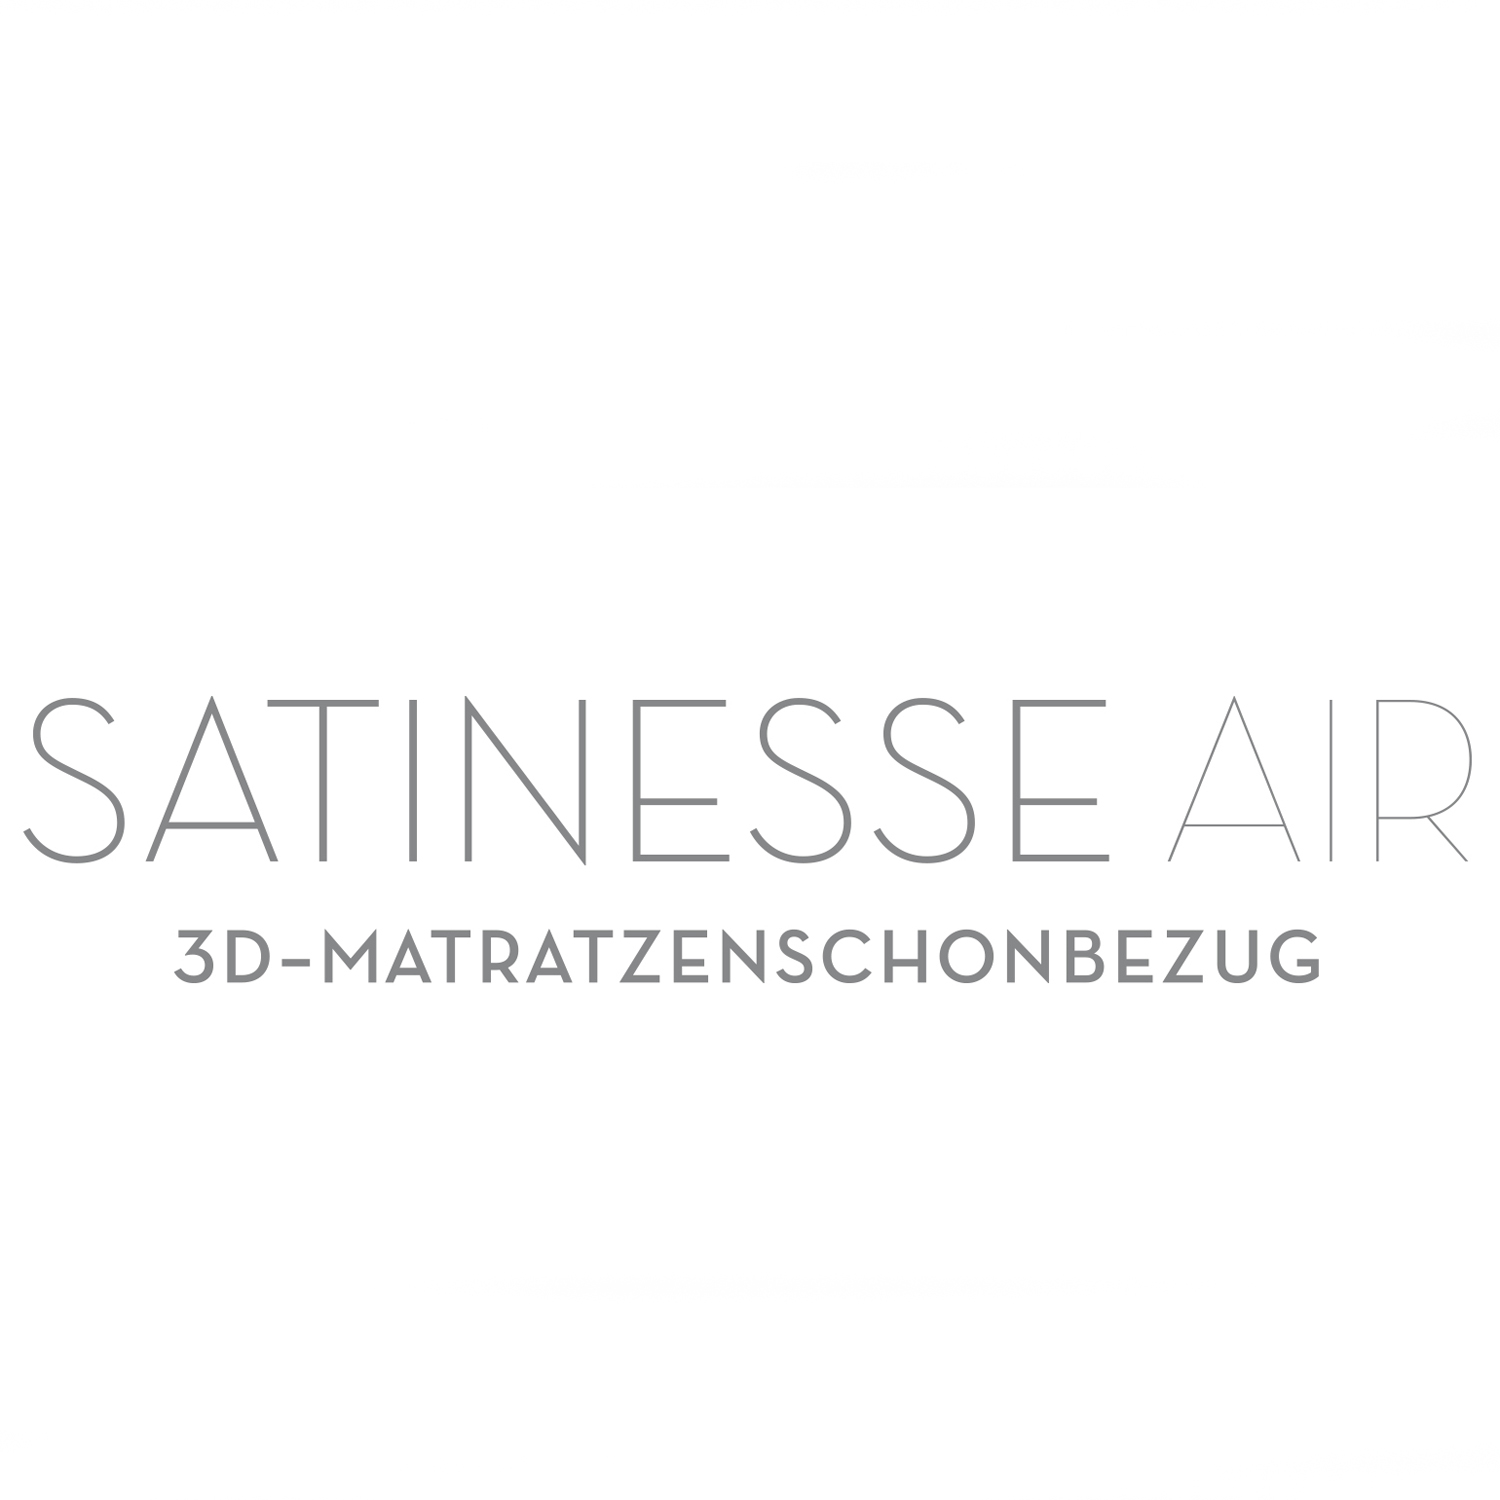 FORMESSE Kissenschonbezug Satinesse Air Silver wollweiß 60x70cm